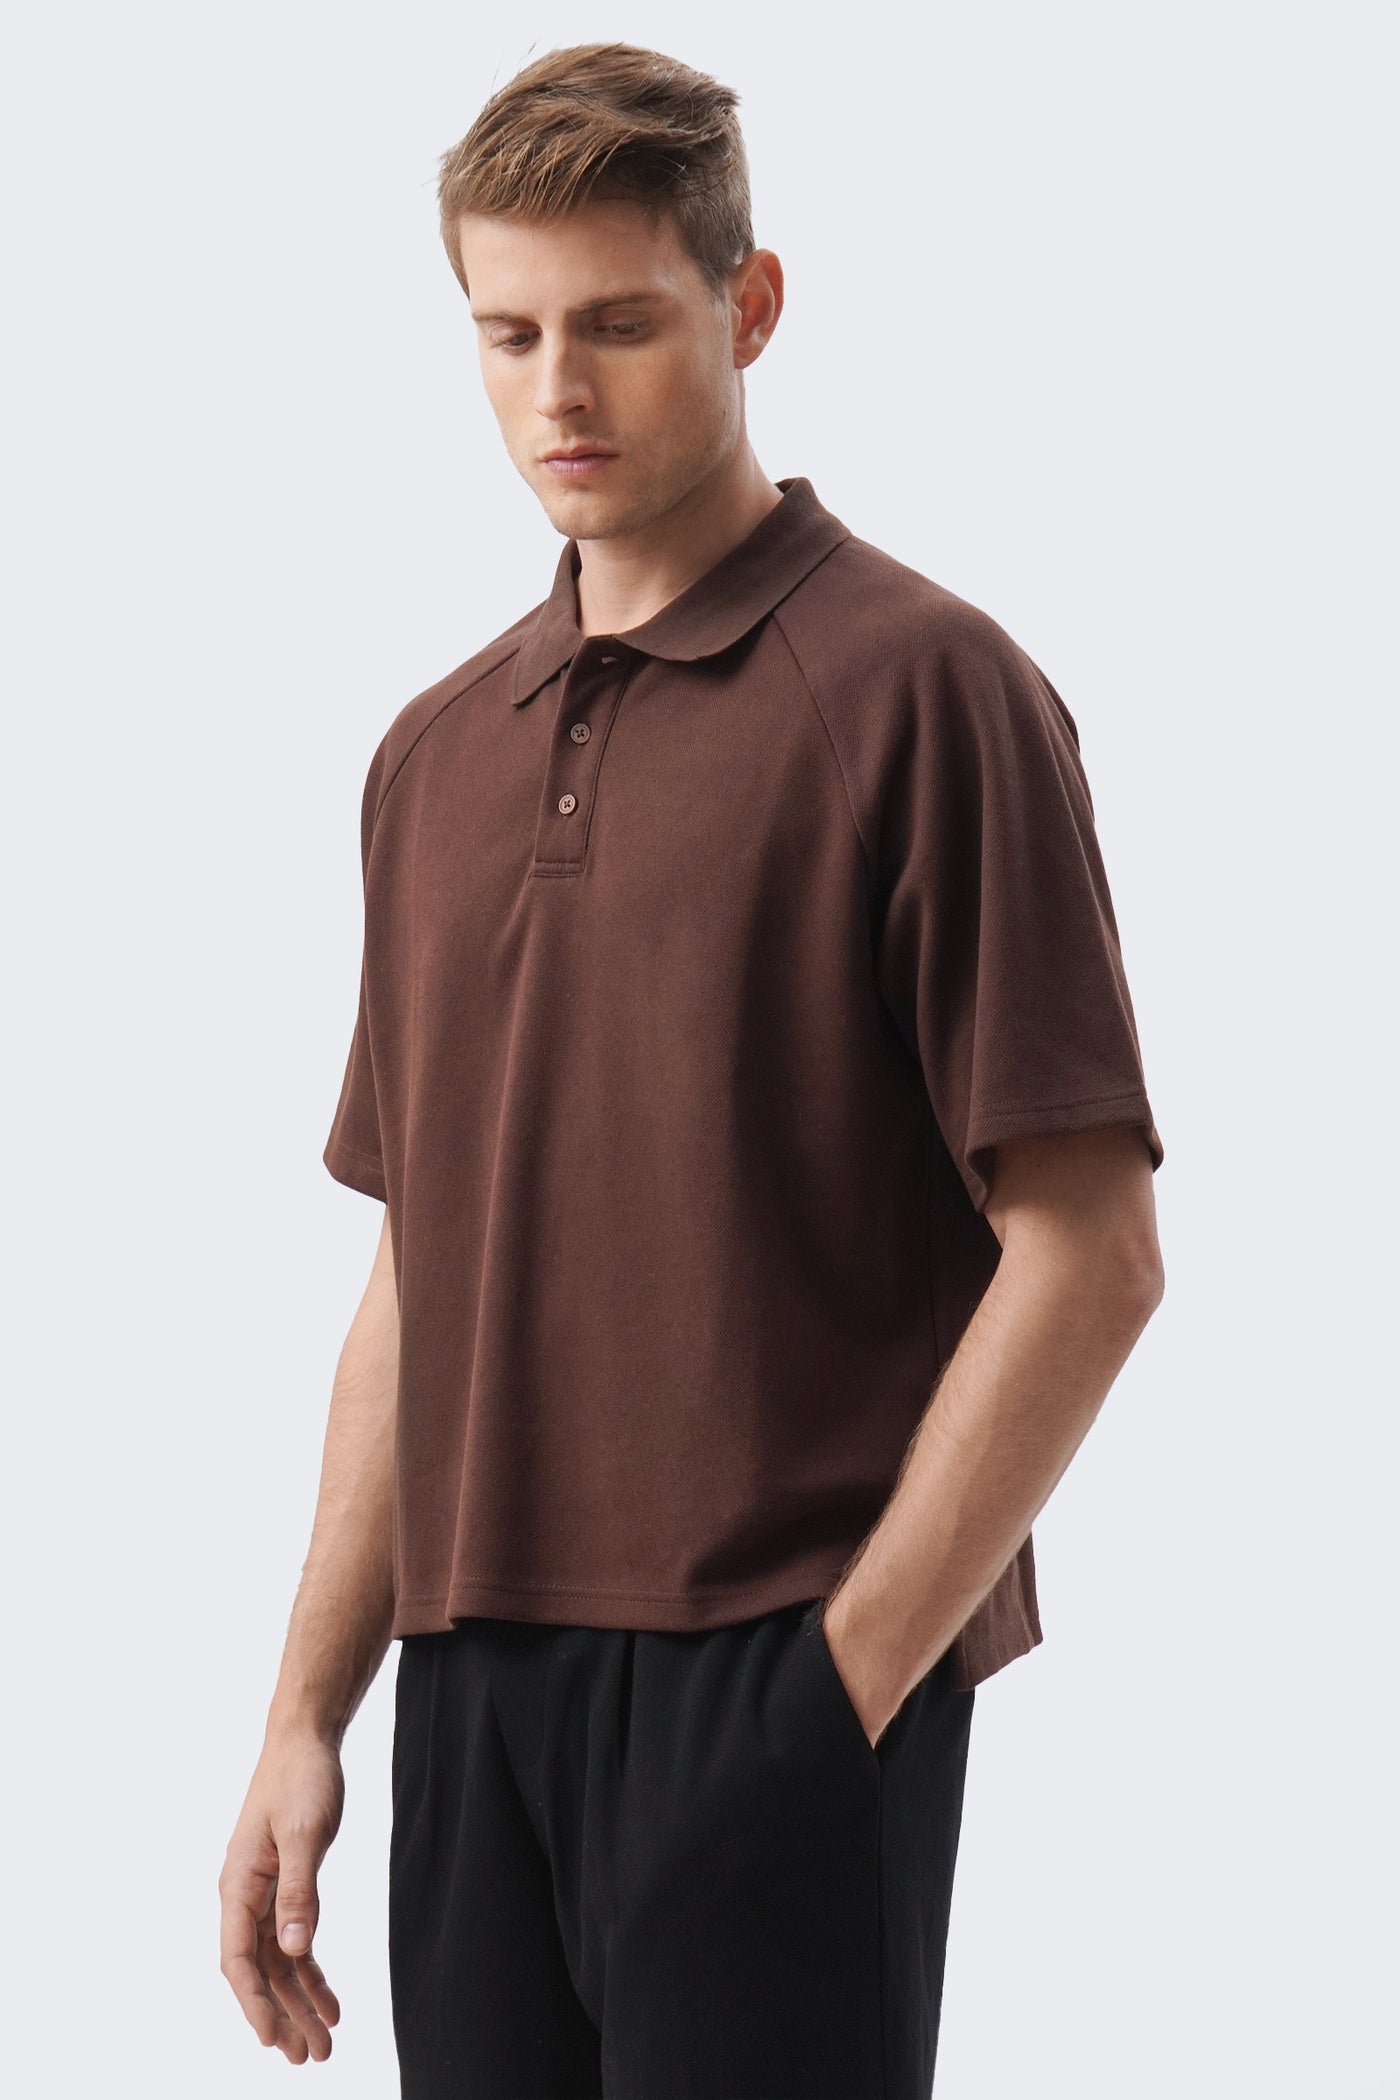 Men's Raglan Short Sleeve Polo